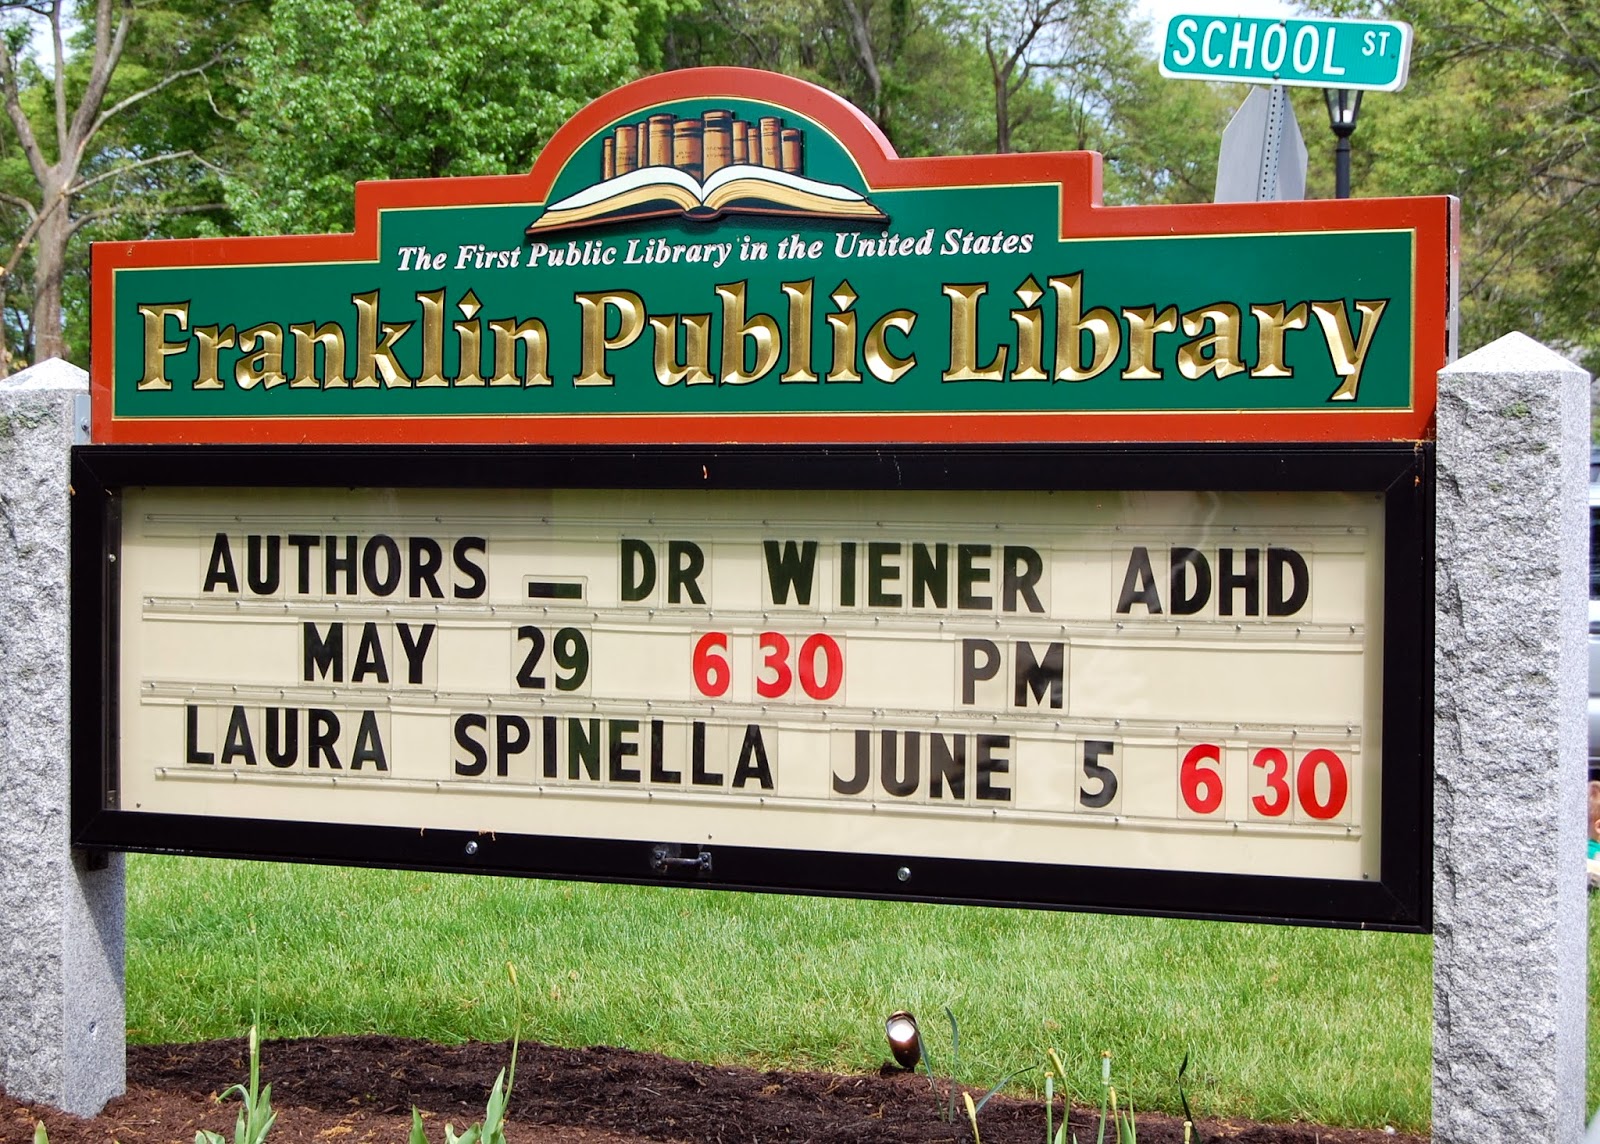 local author Laura Spinella will speak June 5th